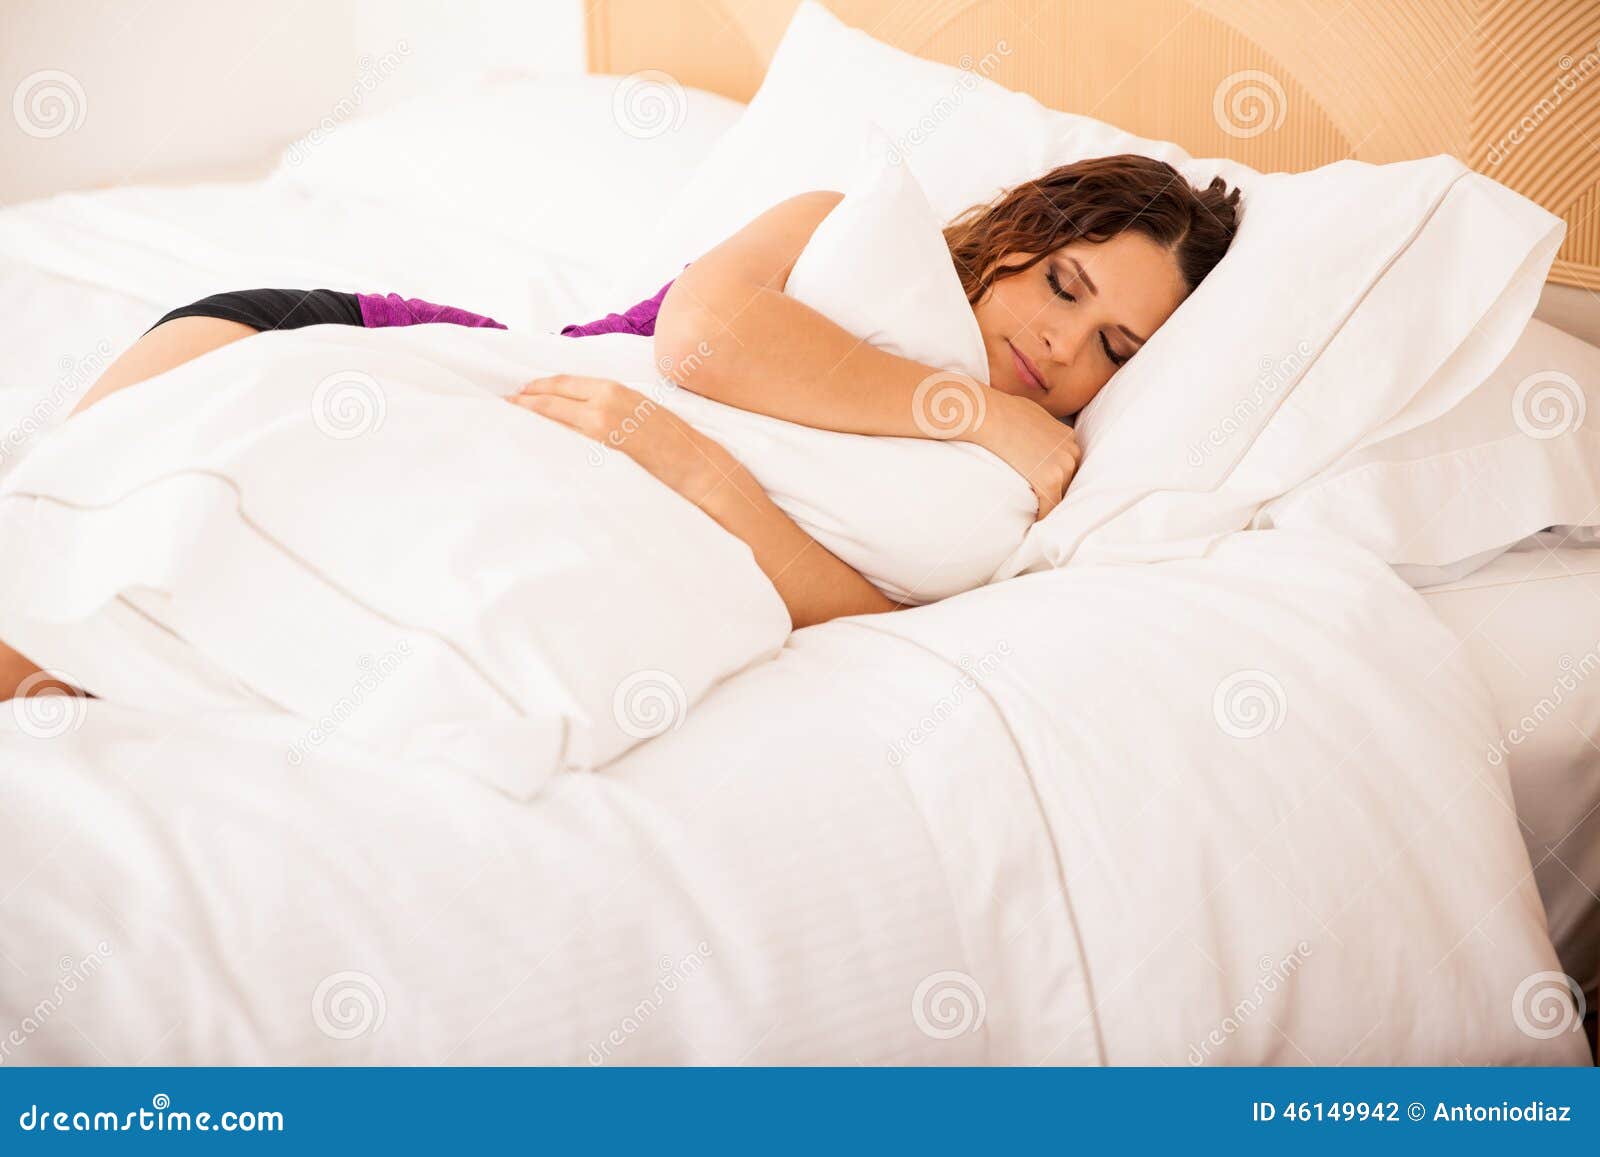 Durmiendo Y Abrazando Una Almohada Foto De Archivo